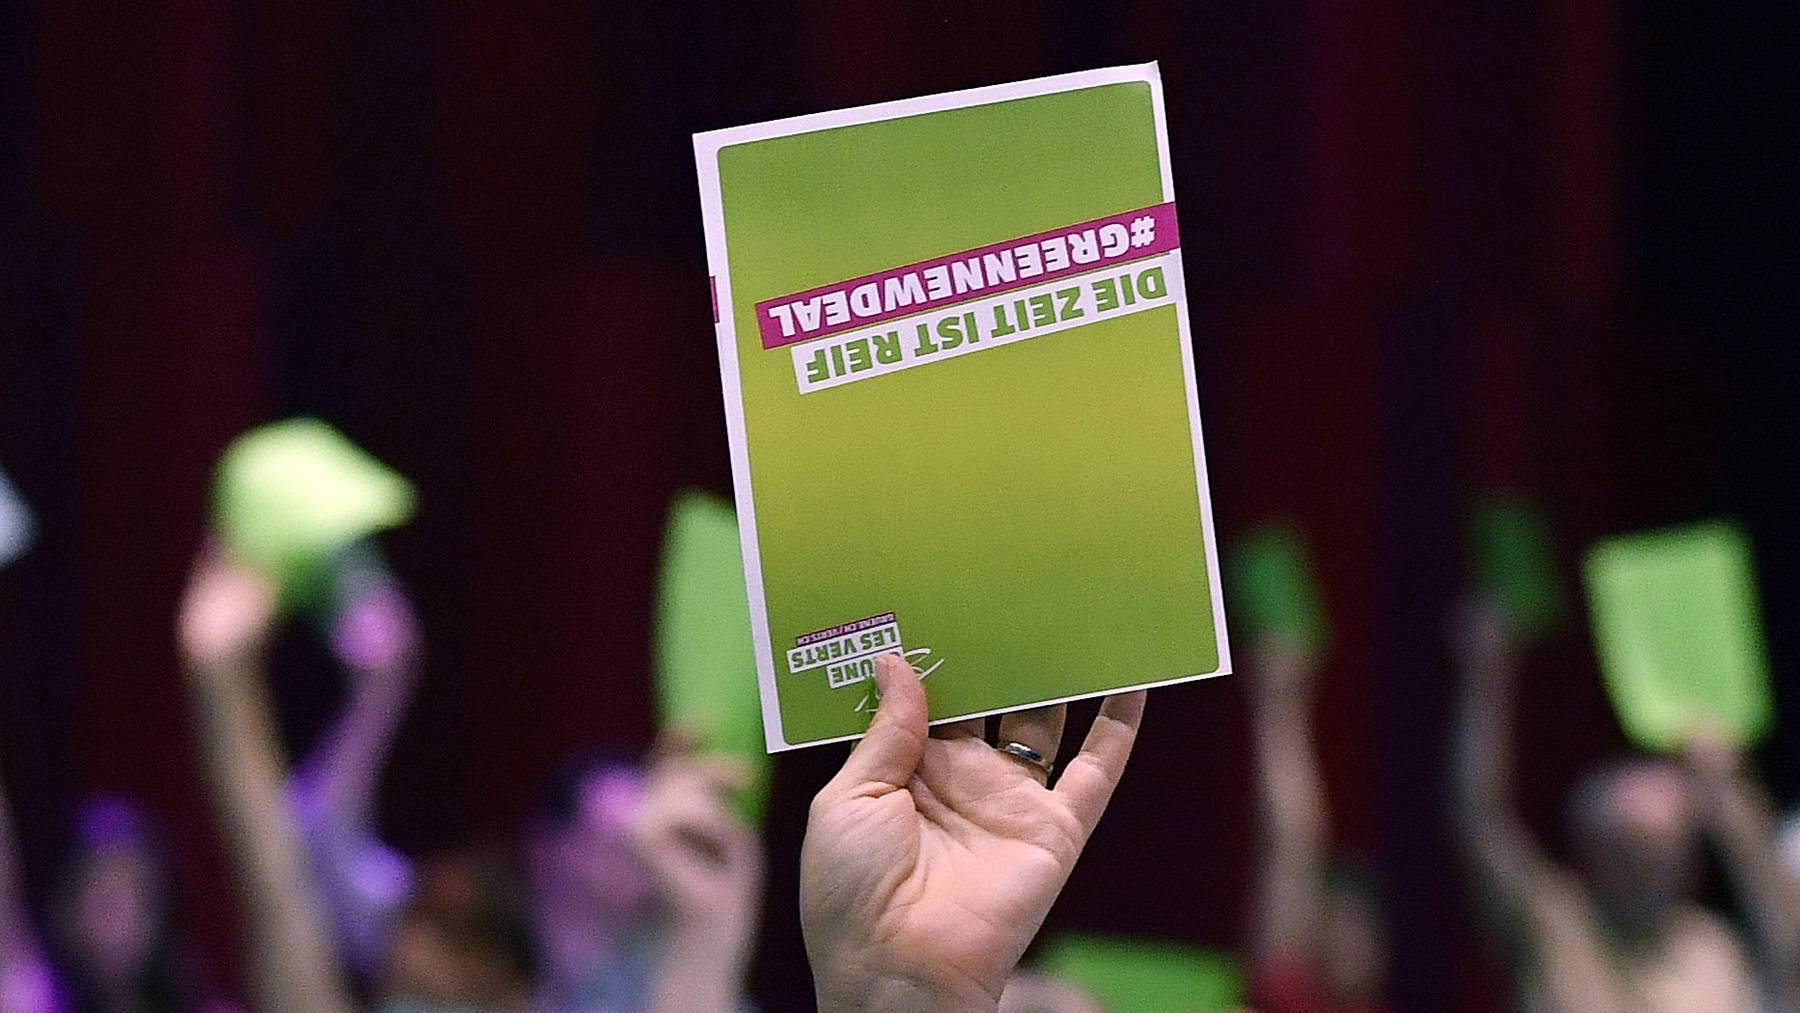 Die Grünen trafen sich erstmals seit der Coronakrise wieder zu einer Delegiertenversammlung. Diese fand in Brugg (AG) statt.